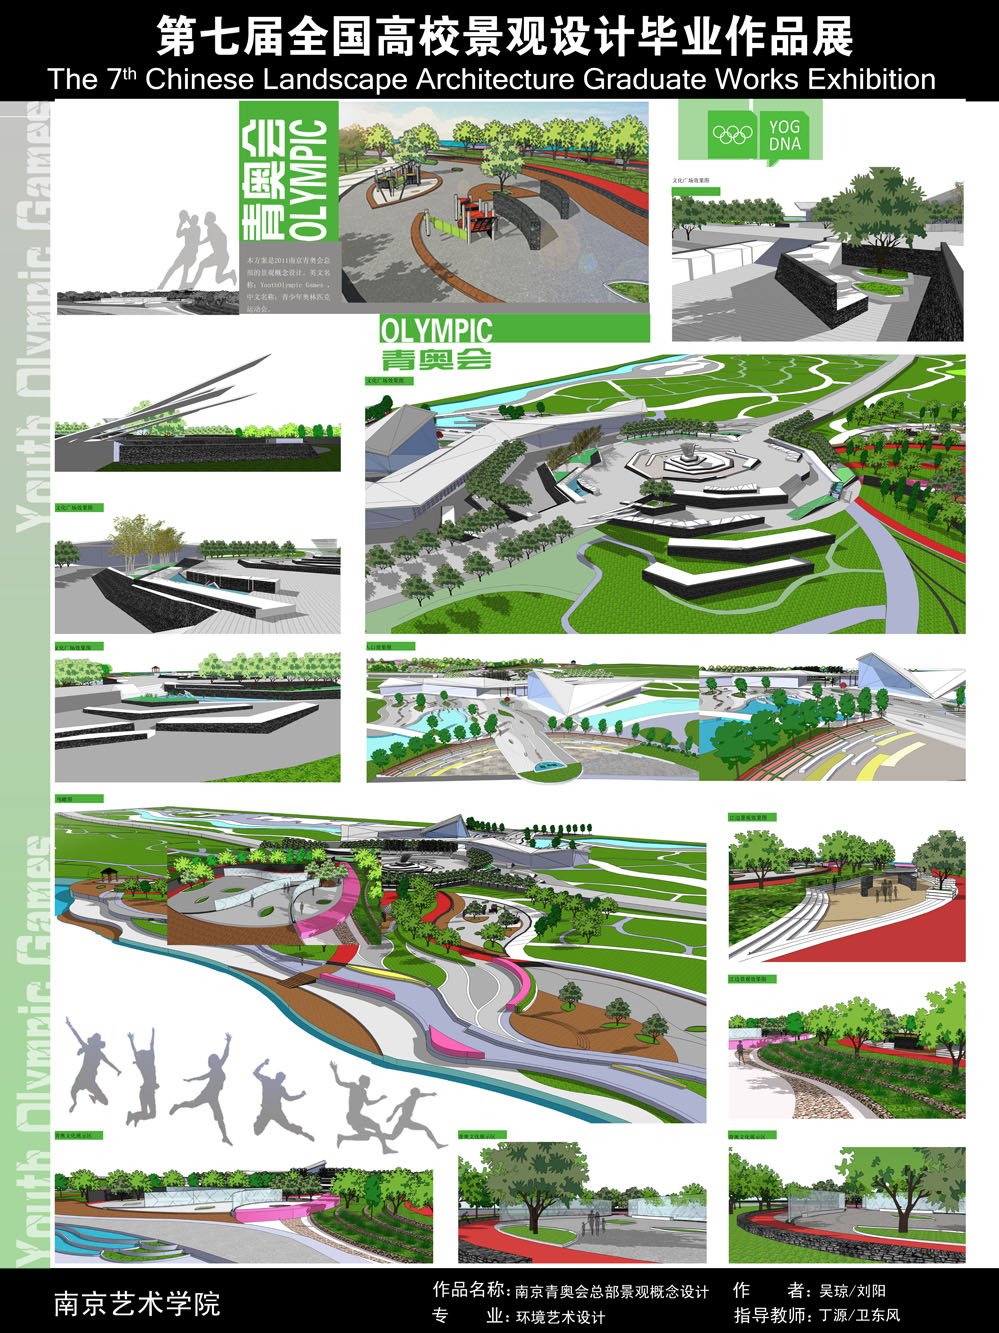 南京青奥会总部景观概念设计-2